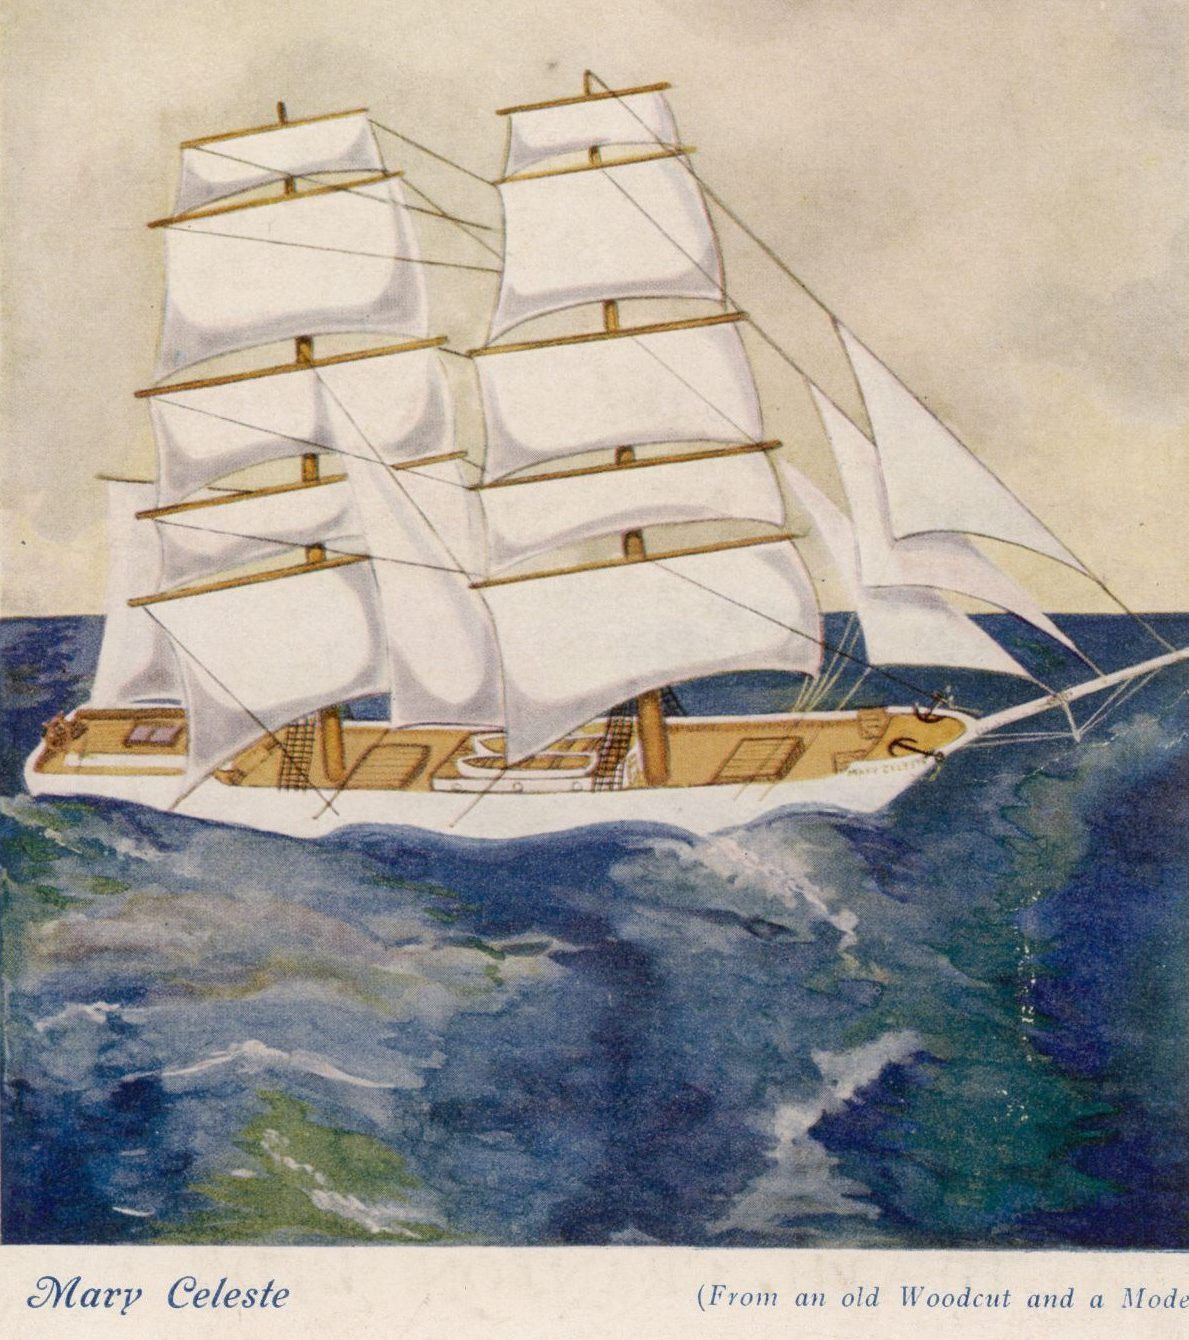 Als eines der berühmtesten Geisterschiffe gilt die "Mary Celeste". Sie trieb durch den Atlantik und wurde am 4. Dezember 1872 von der Bark "Dei Gratia" zwischen Portugal und den Azoren aufgefunden. Von der Besatzung fehlte jede Spur. Der Zweimaster sollte Fässer mit Industrie-Alkohol von New York nach Genua bringen, kam dort aber nie an.&nbsp;